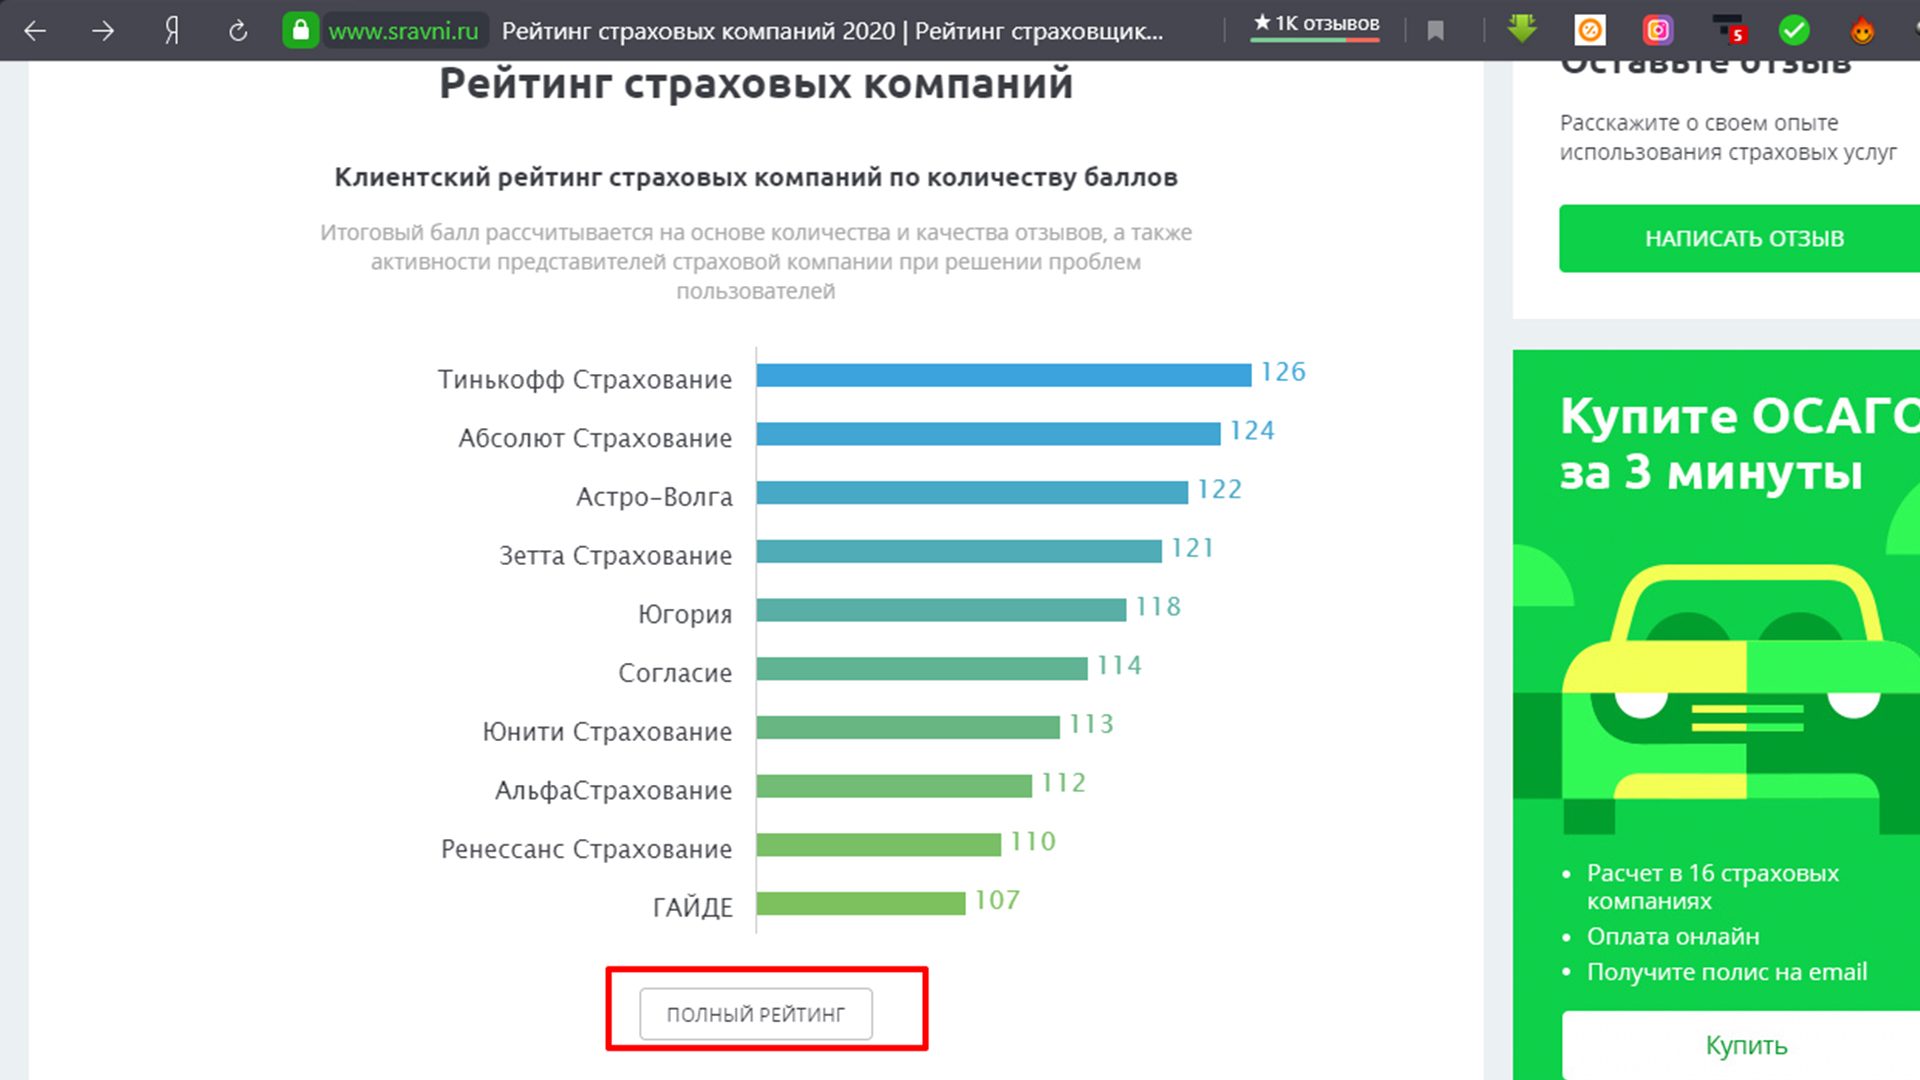 Рейтинг страховых компаний на сайте Сравни.ру